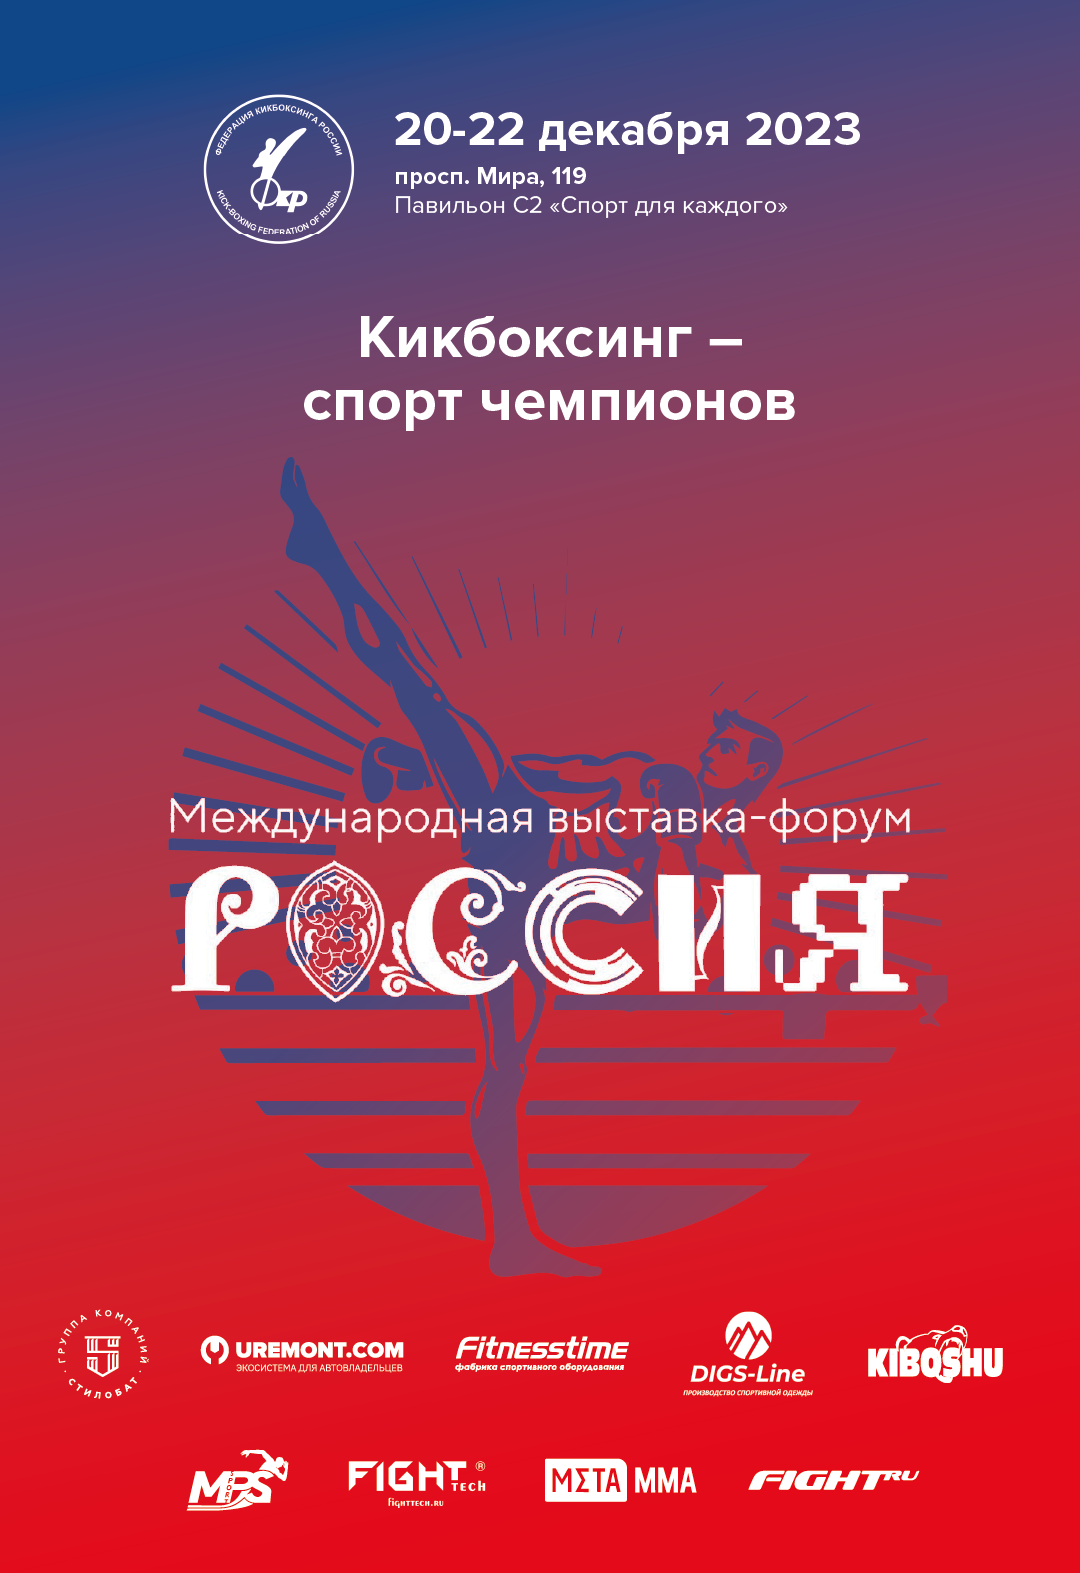 Федерация кикбоксинга России примет участие в международной выставке-форуме «Россия»